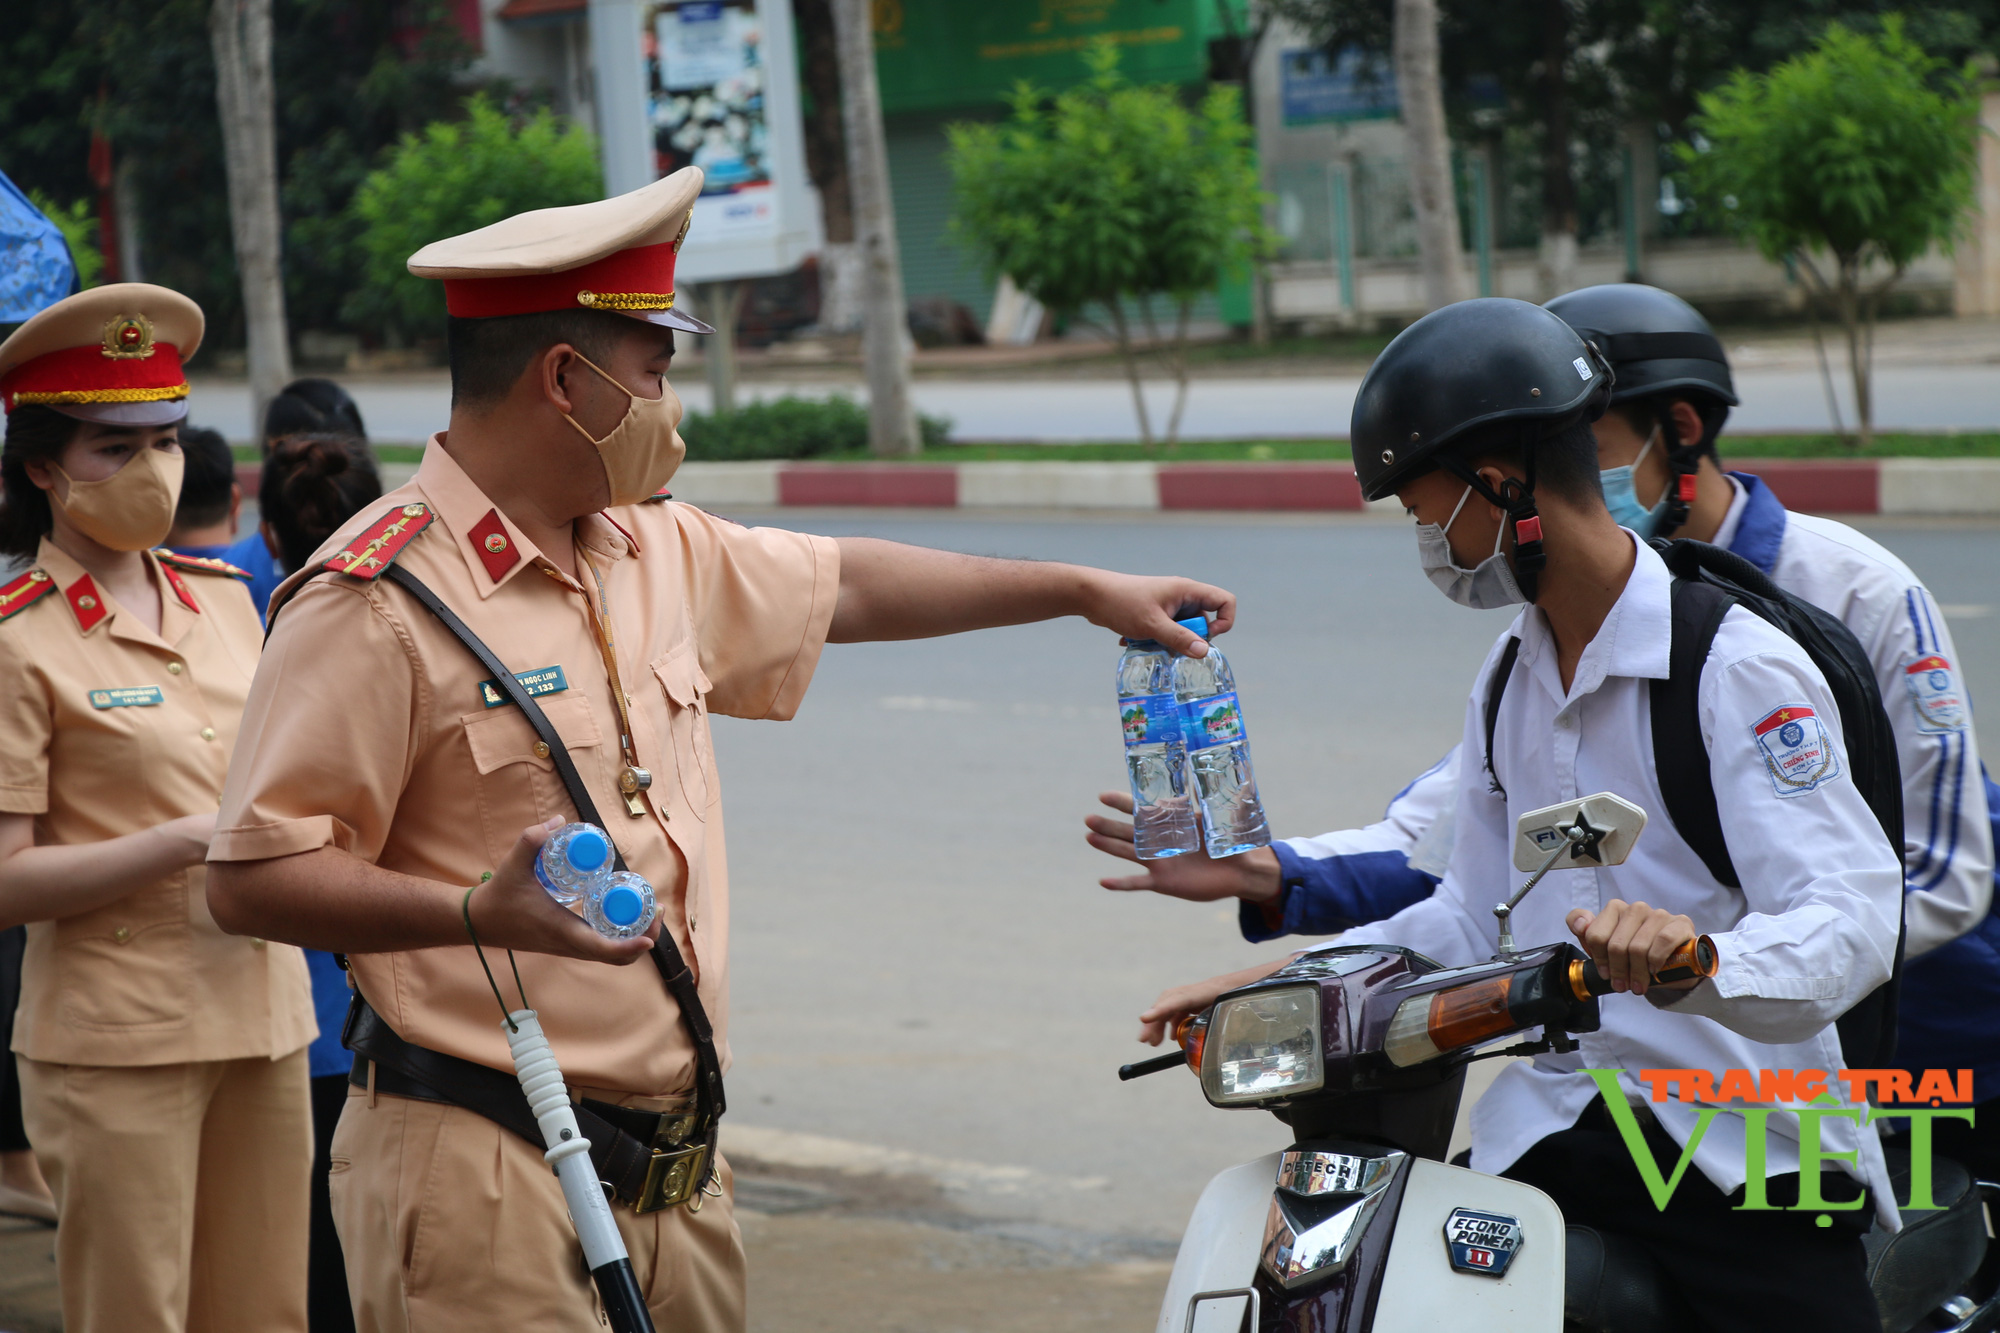 Chùm ảnh: Lực lượng cảnh sát giao thông phát nước lọc miễn phí, hỗ trợ các thí sinh thi tốt nghiệp THPT năm 2021 - Ảnh 14.